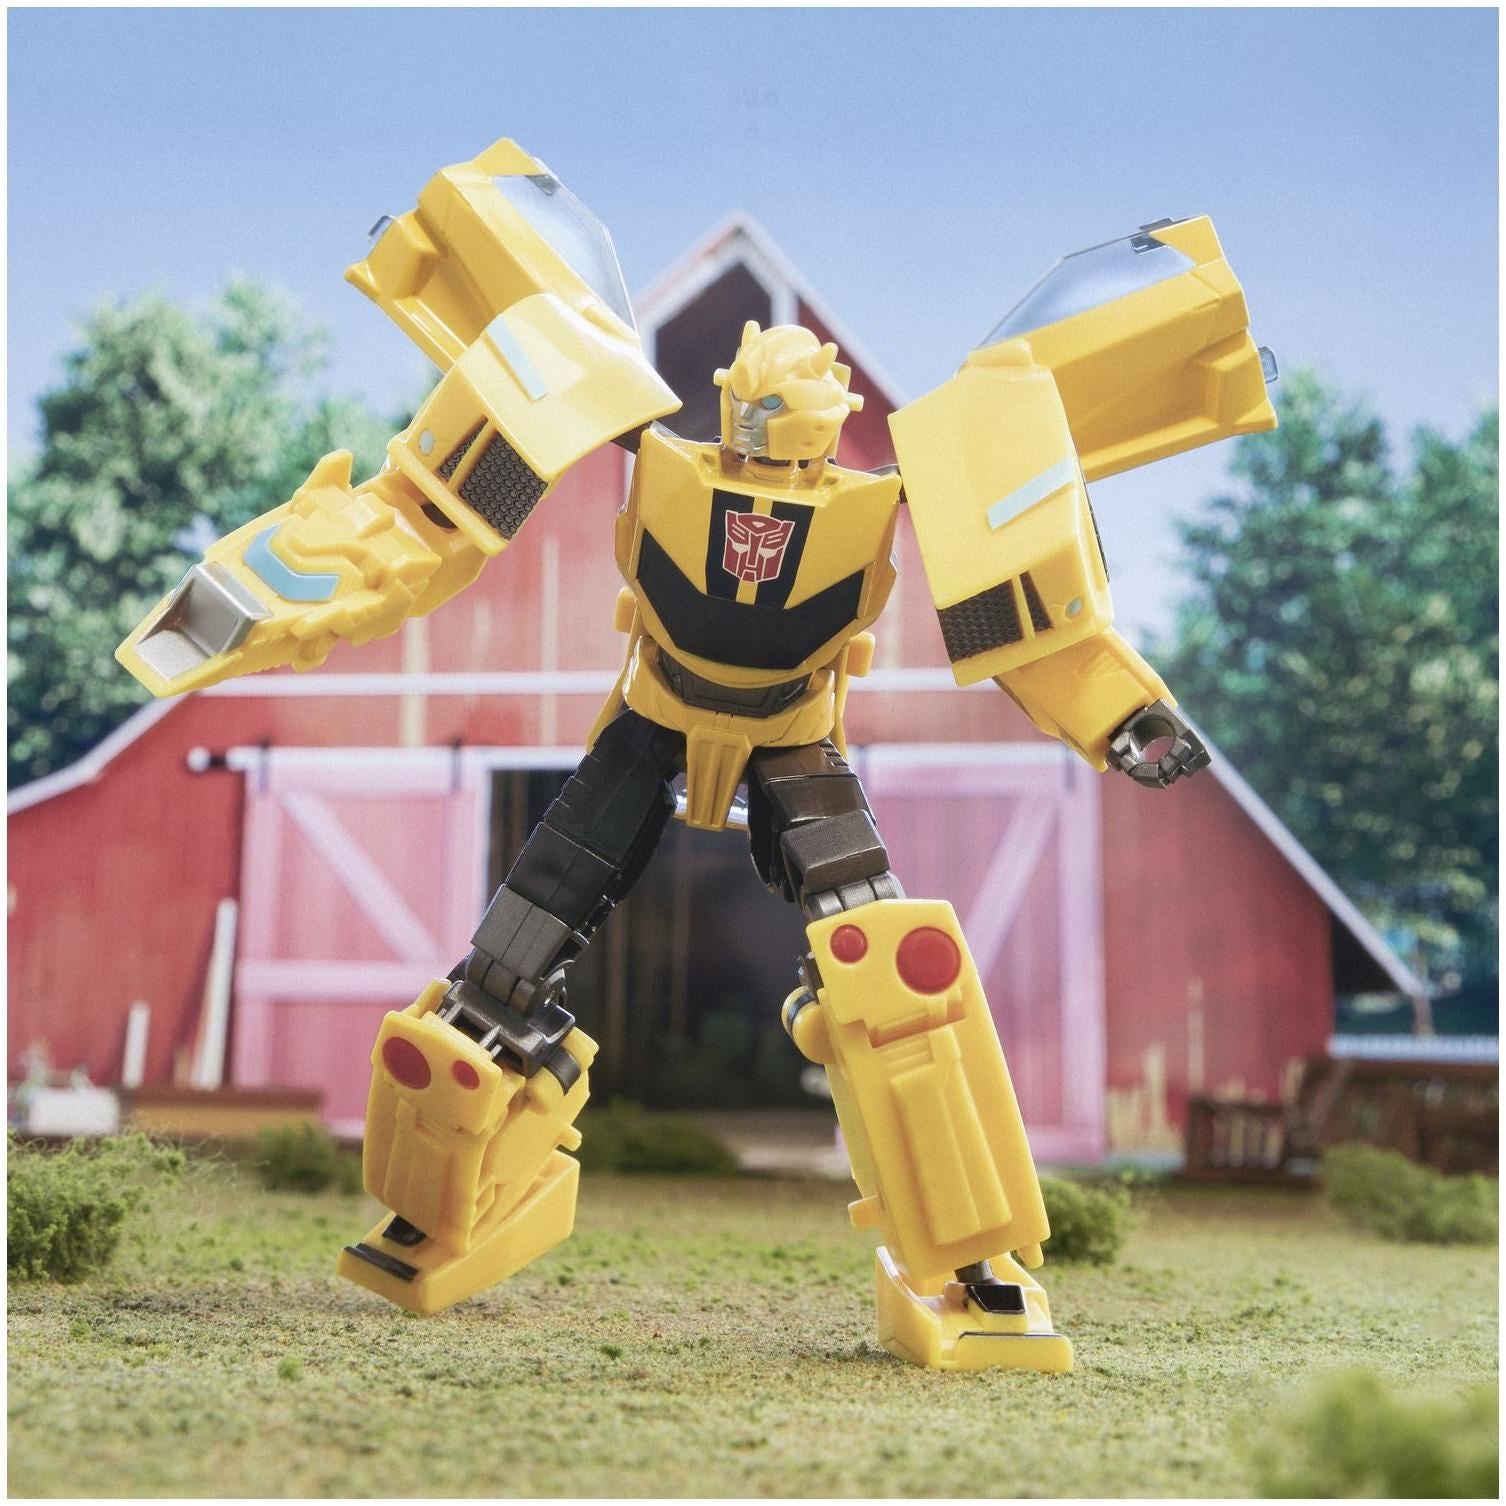 Transformers EarthSpark Bumblebee Deluxe Figure